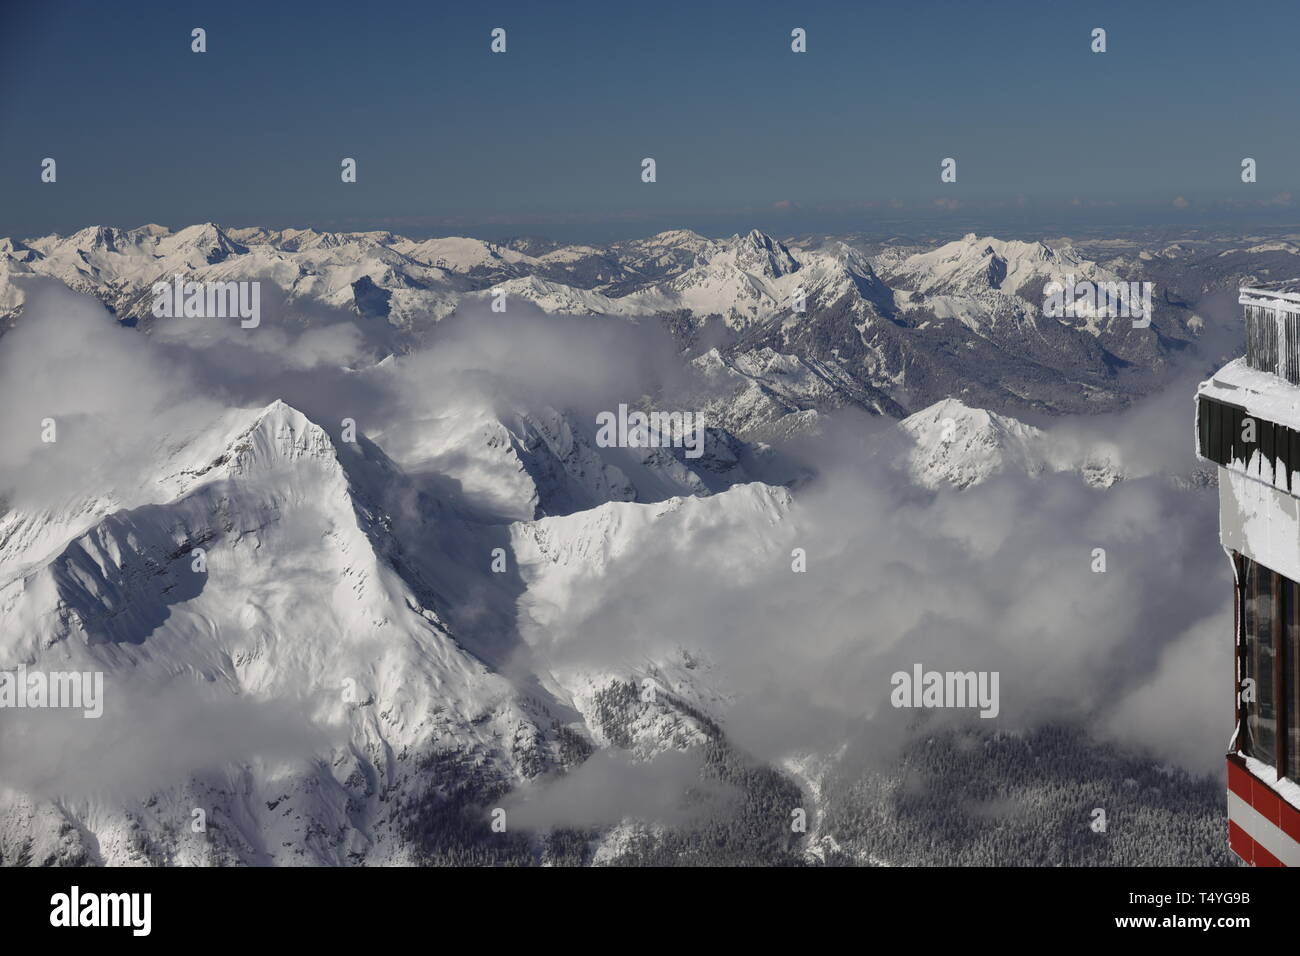 Zugspitze: Grandoses winterliches Alpenpanorama mit sehr guter Fernsicht. Wenige Wolken verdecken ein paar Gipfel. Blickrichtung Südwesten Foto Stock